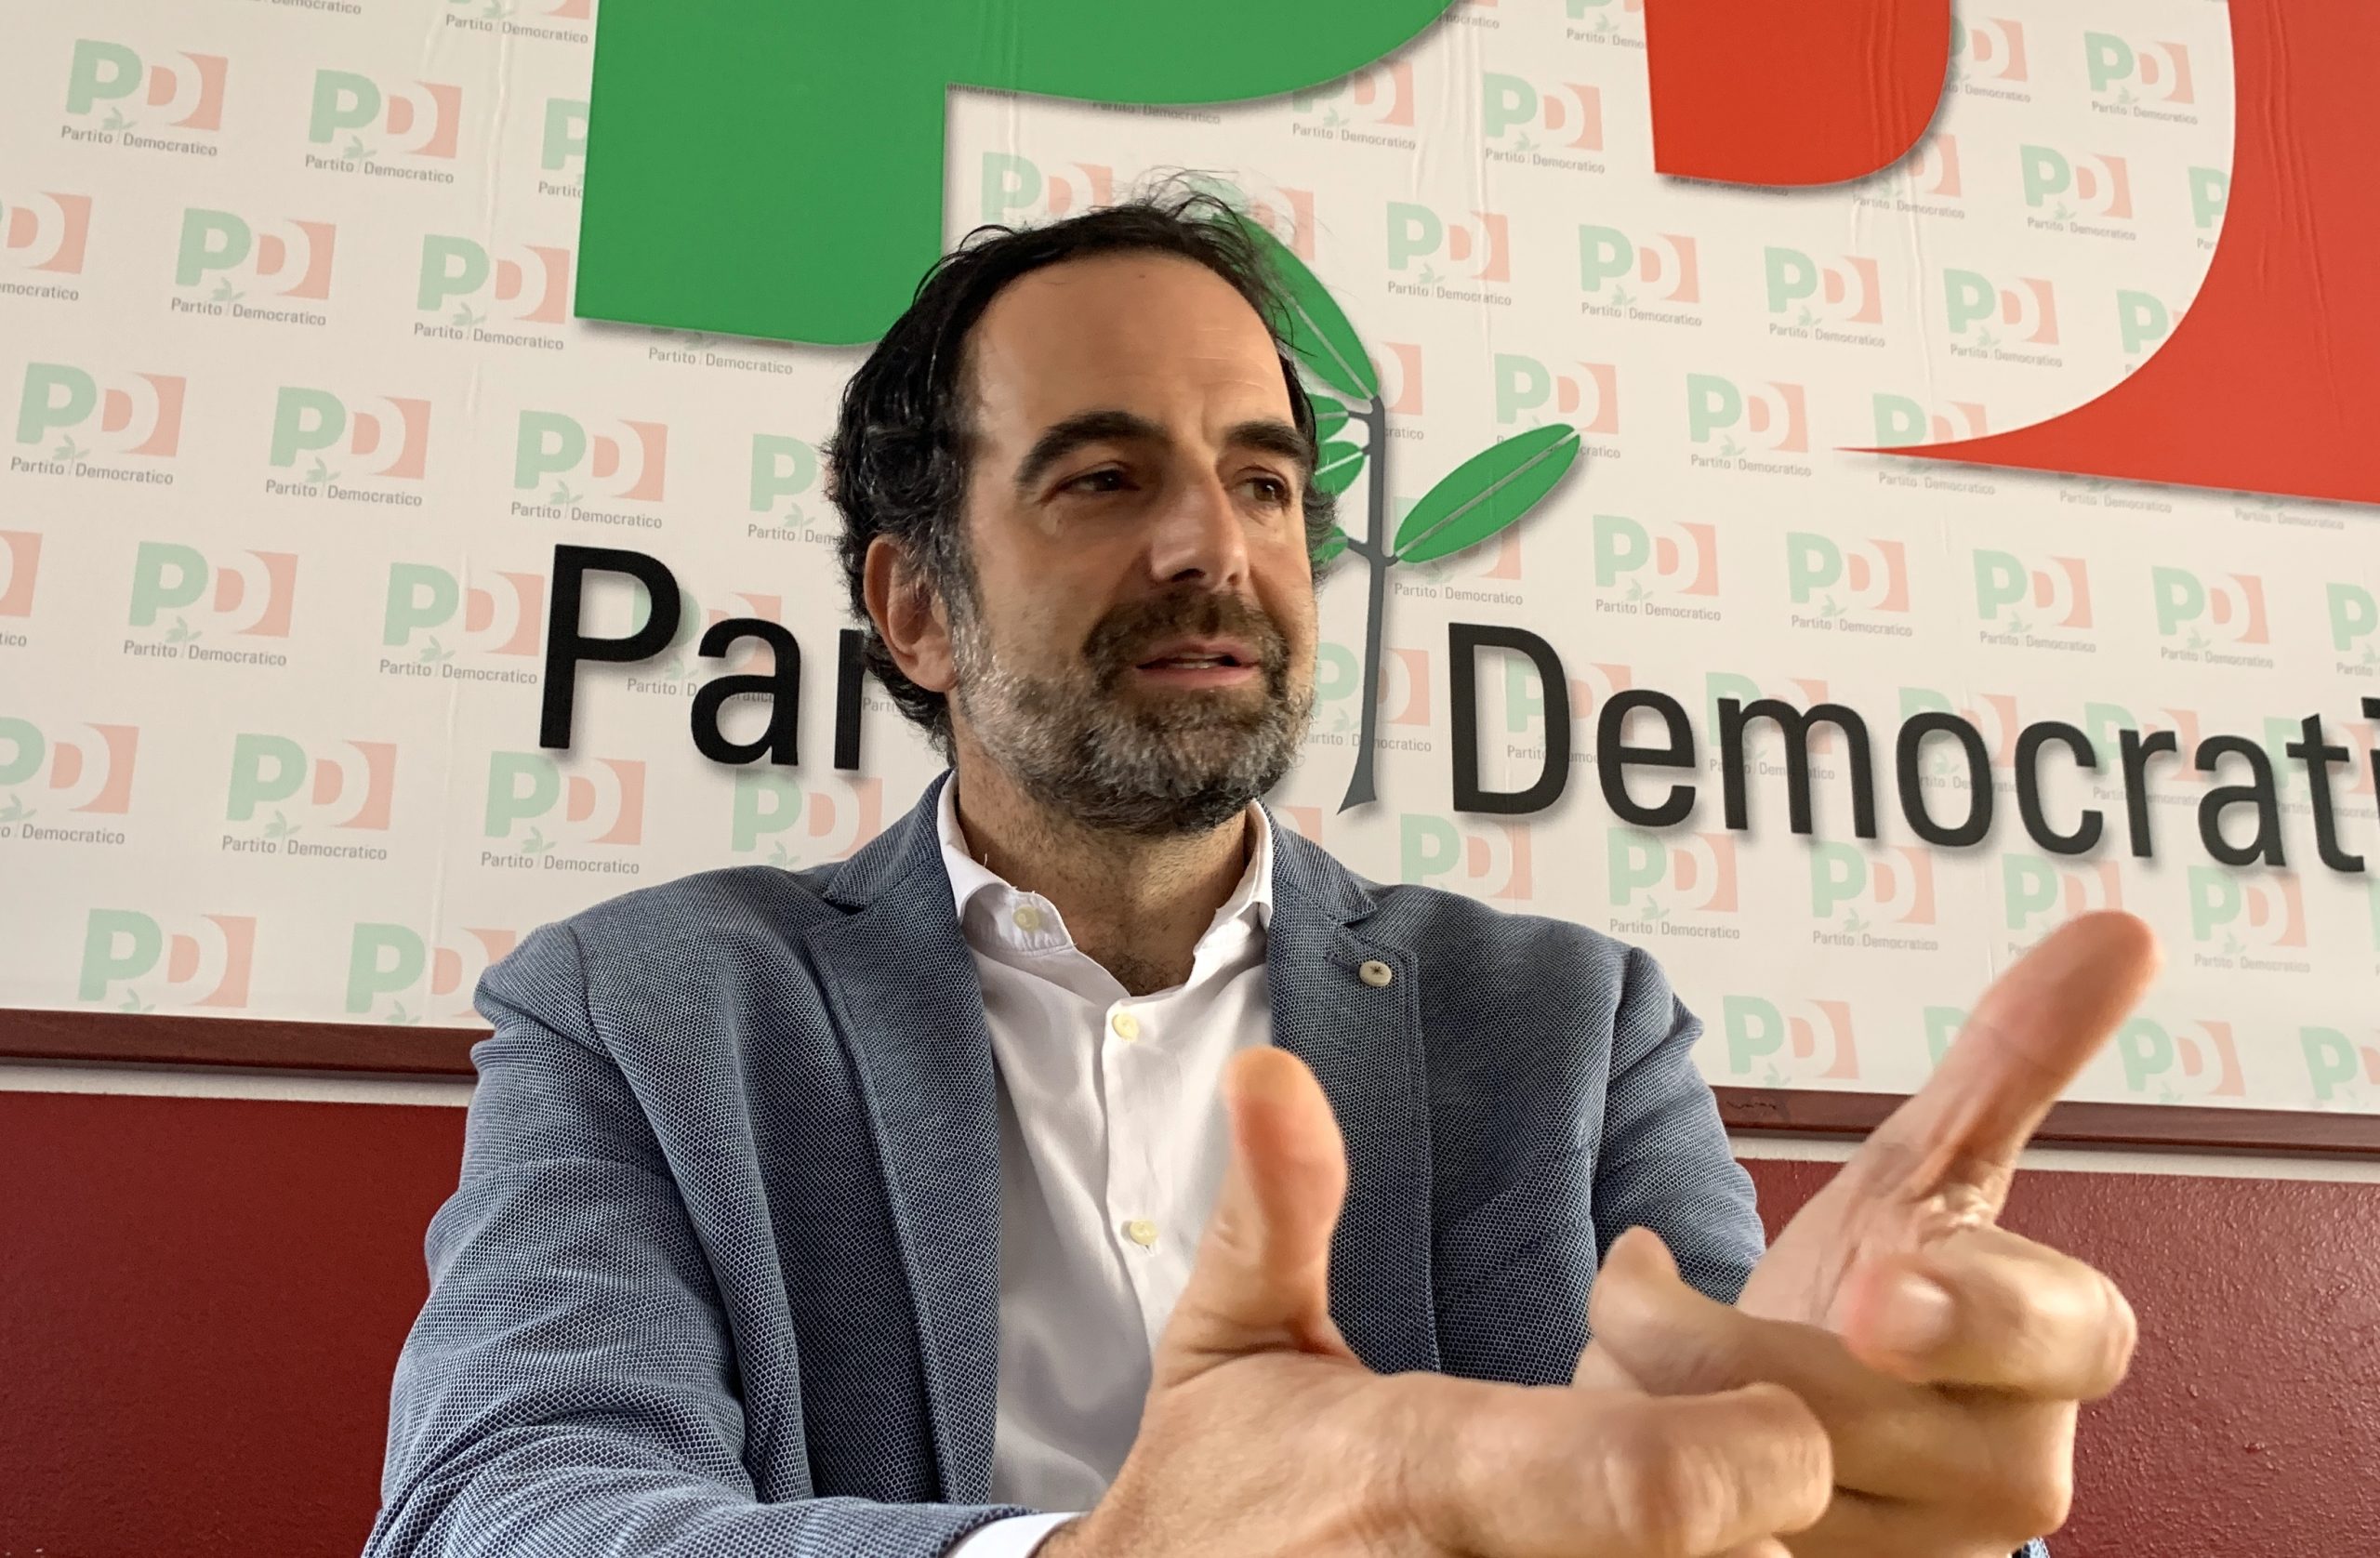 Europee, Alfieri (Pd): "Elly Schlein candidata? Il pensiero di Prodi è condiviso, ma deciderà lei"